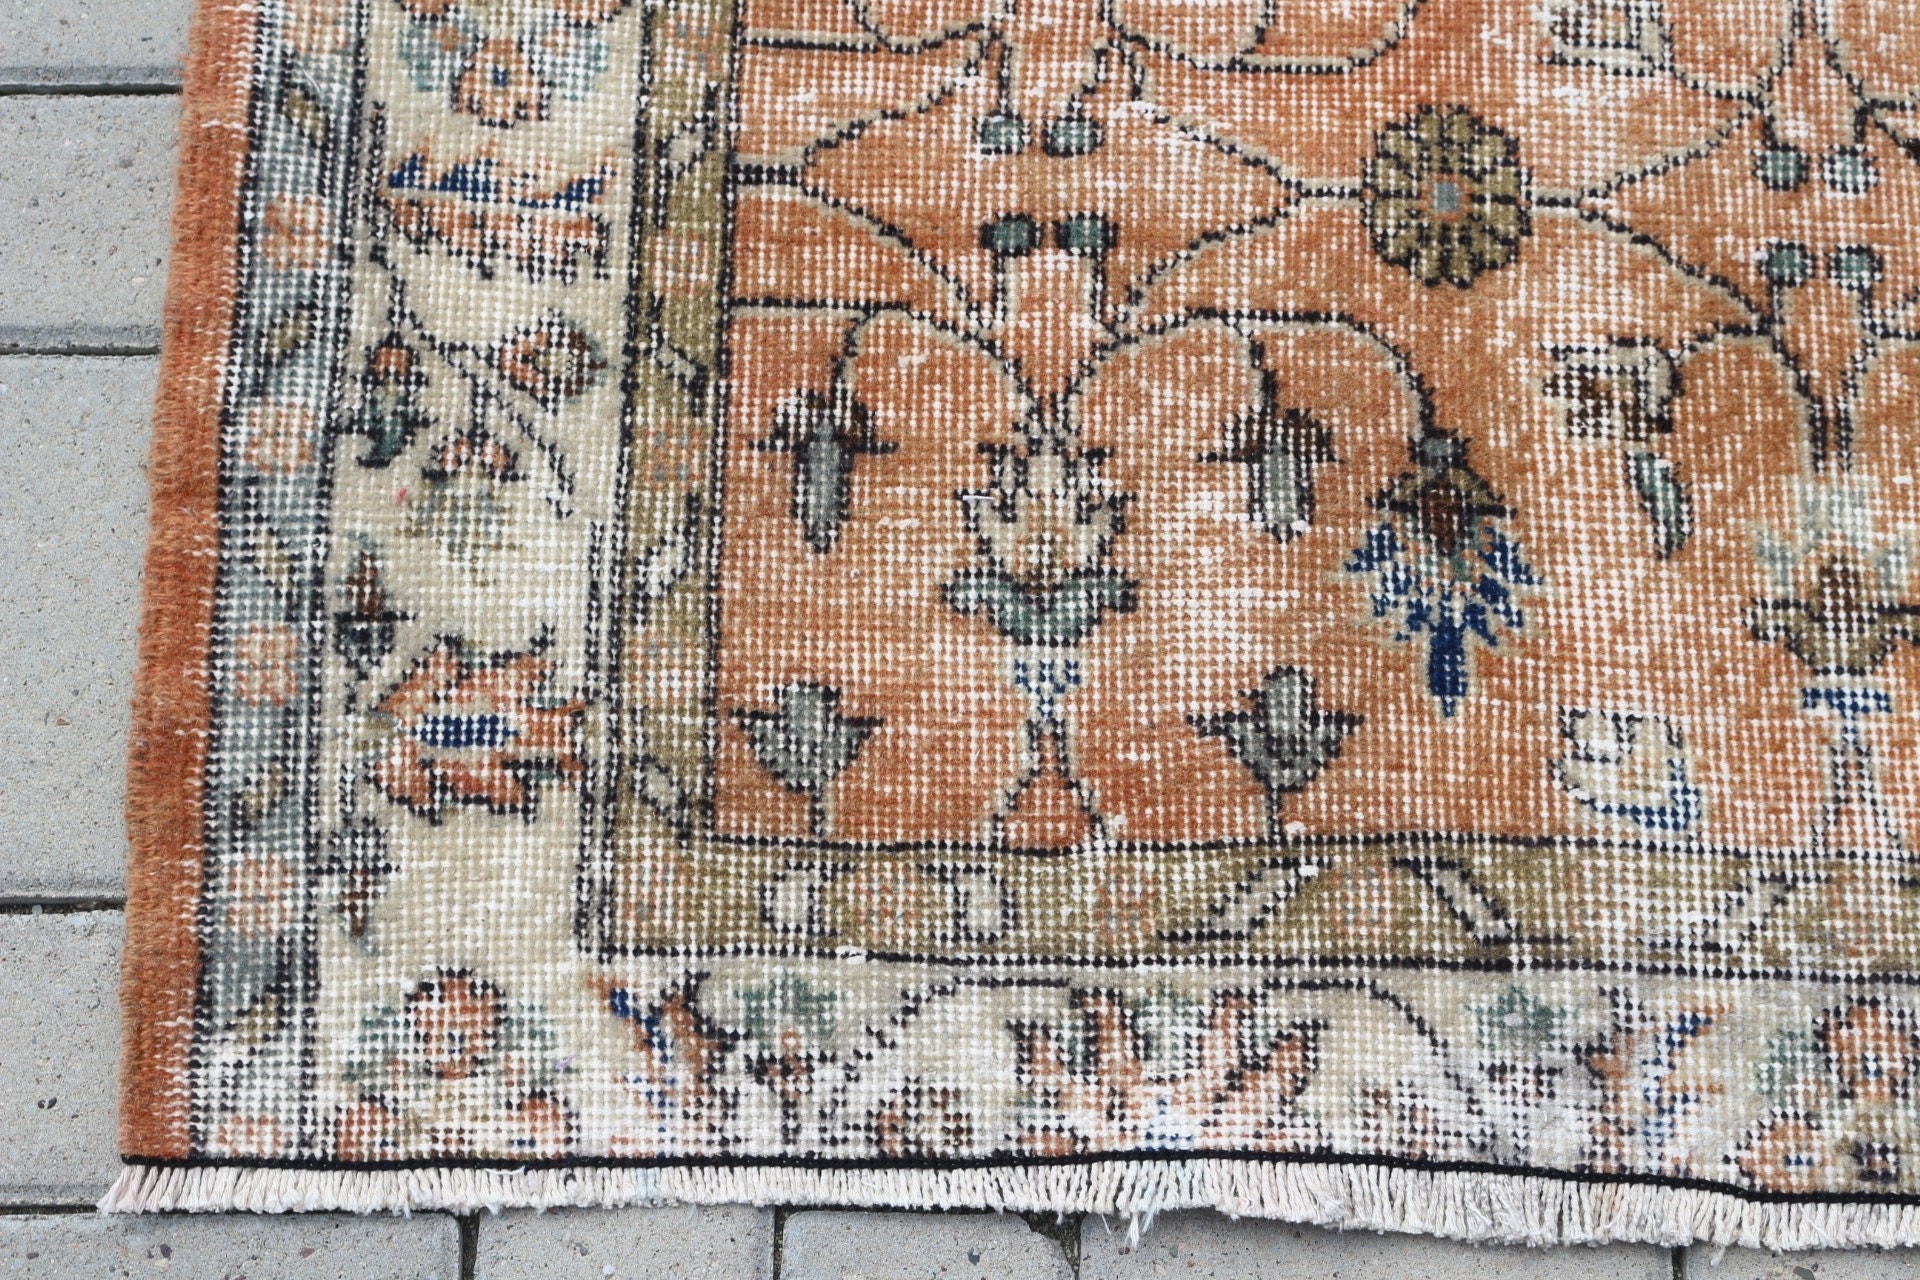 Floor Rugs, Vintage Rug, Turkish Rug, Living Room Rugs, Oriental Rug, Rugs for Indoor, Orange Antique Rugs, 3.9x6.6 ft Area Rug, Dorm Rug